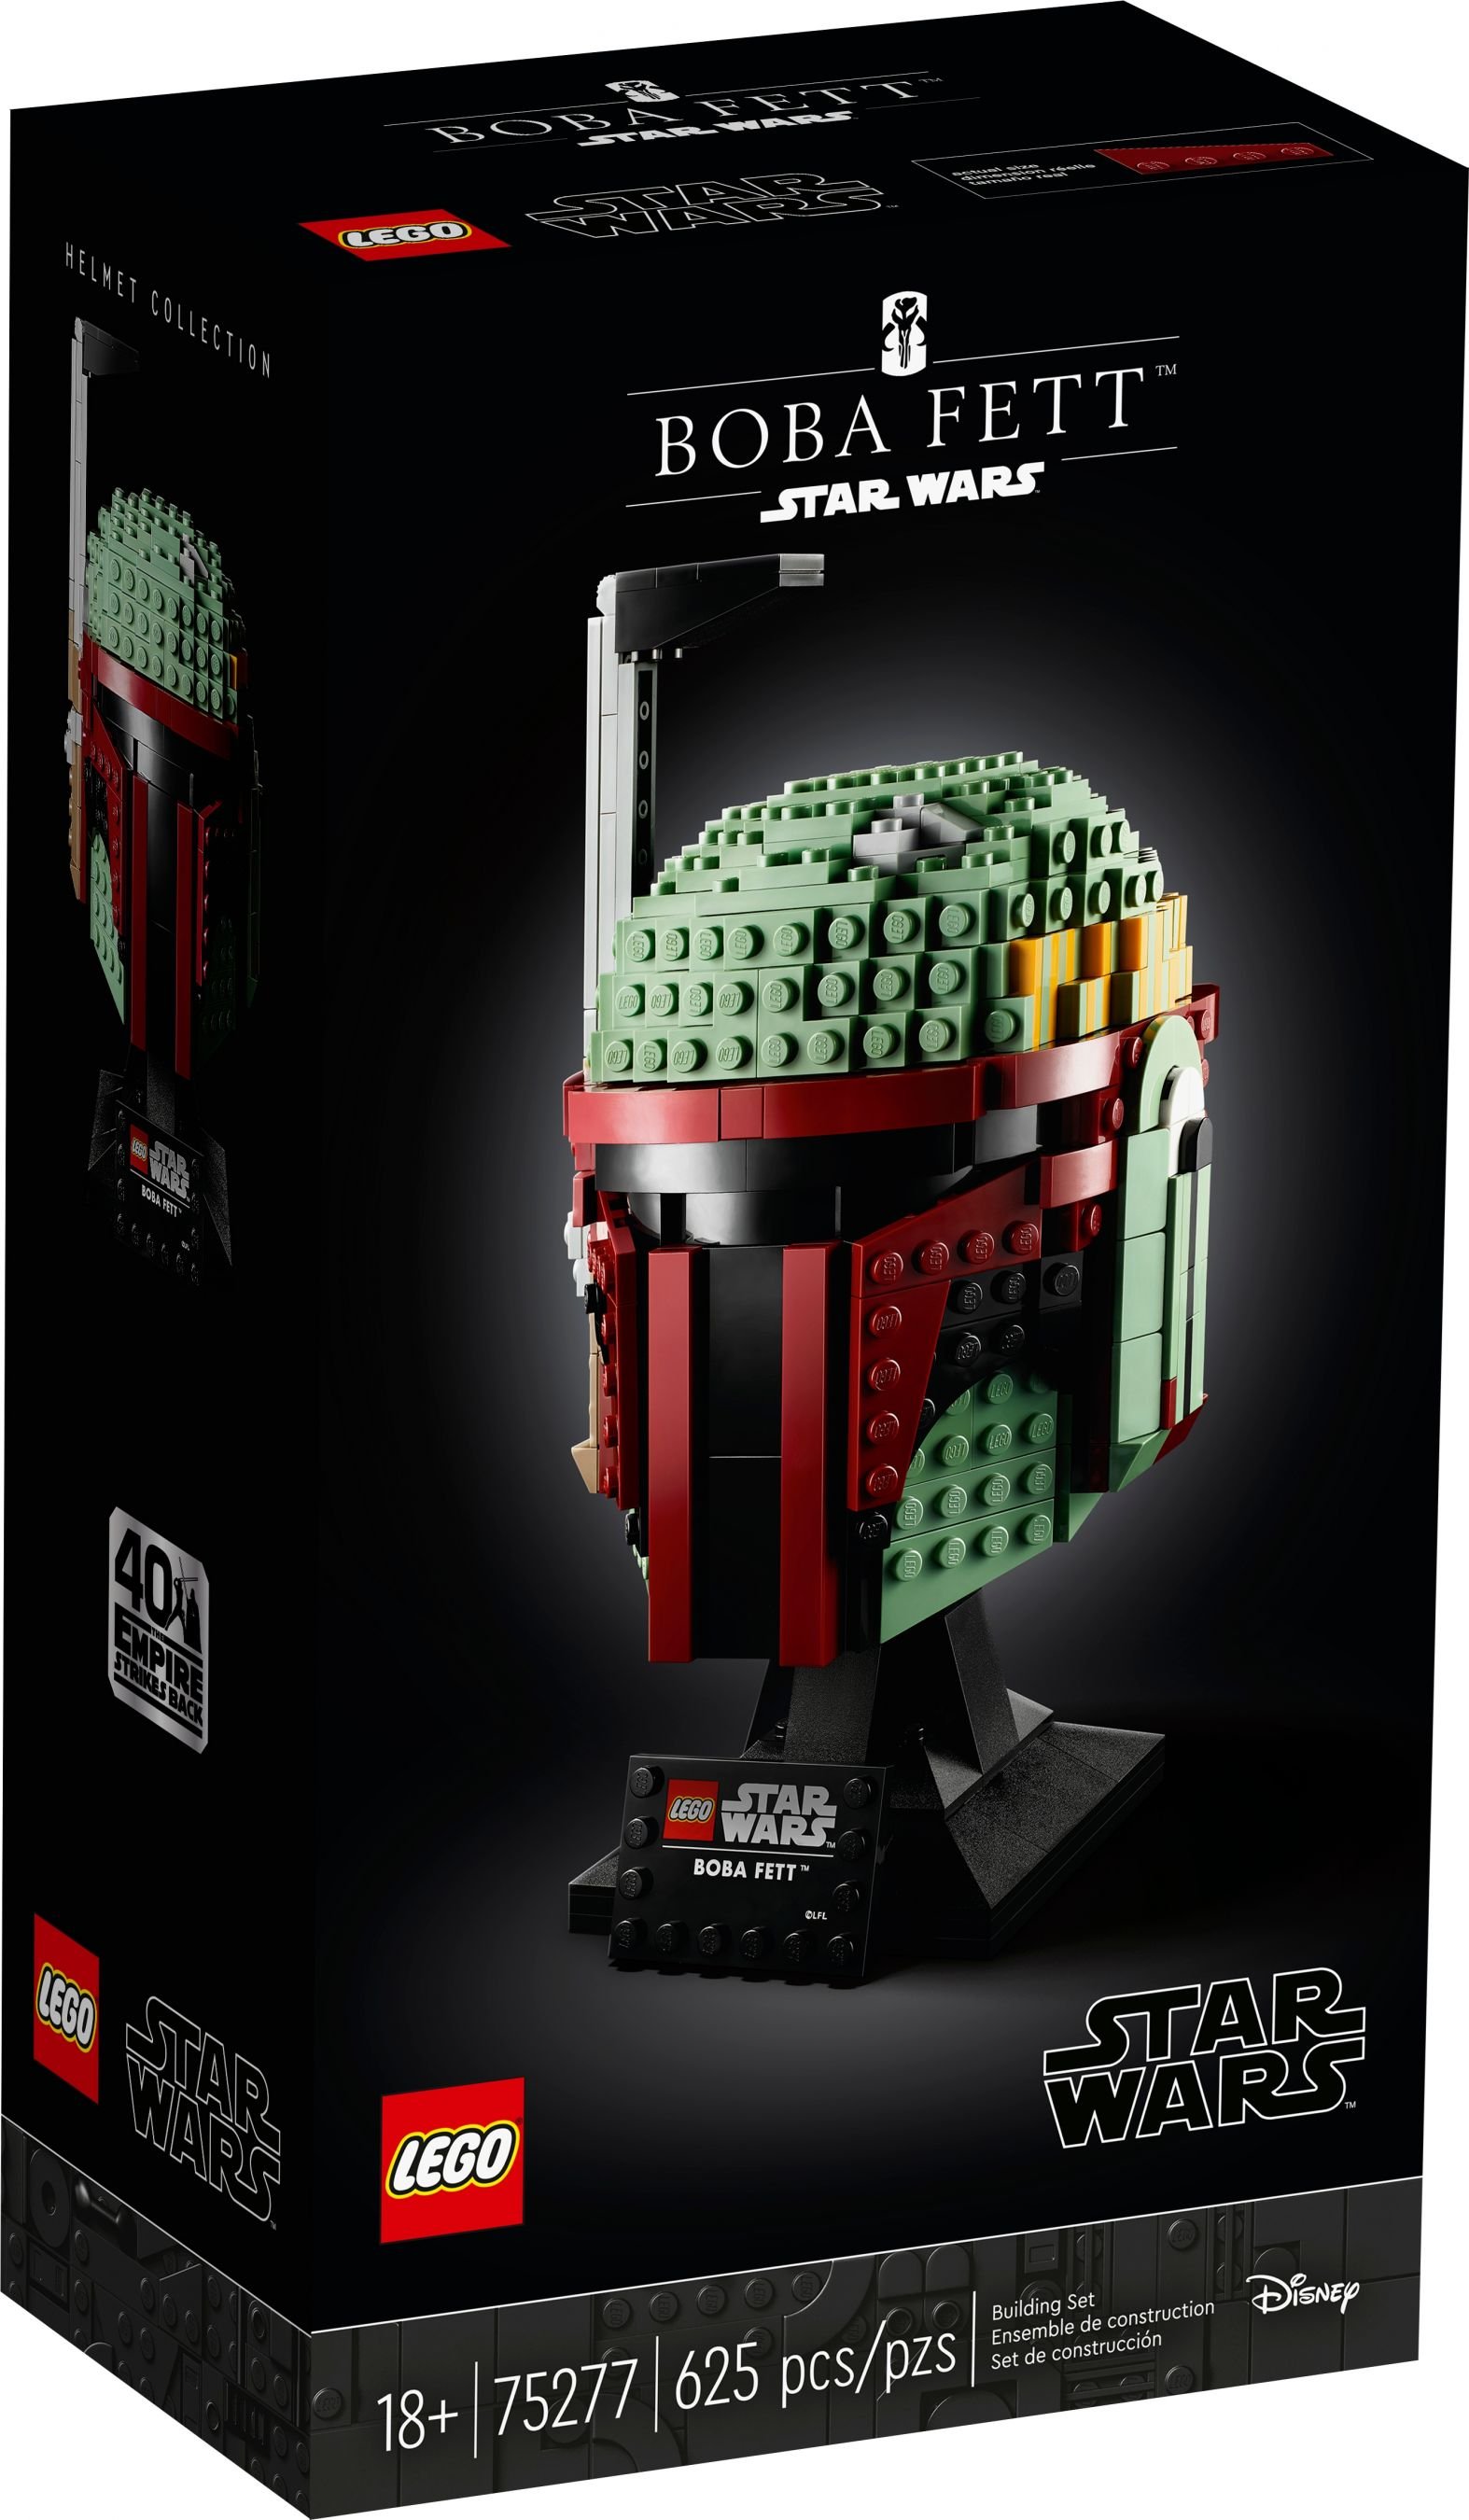 LEGO Star Wars 75277 Boba Fett Helm LEGO_75277_alt1.jpg